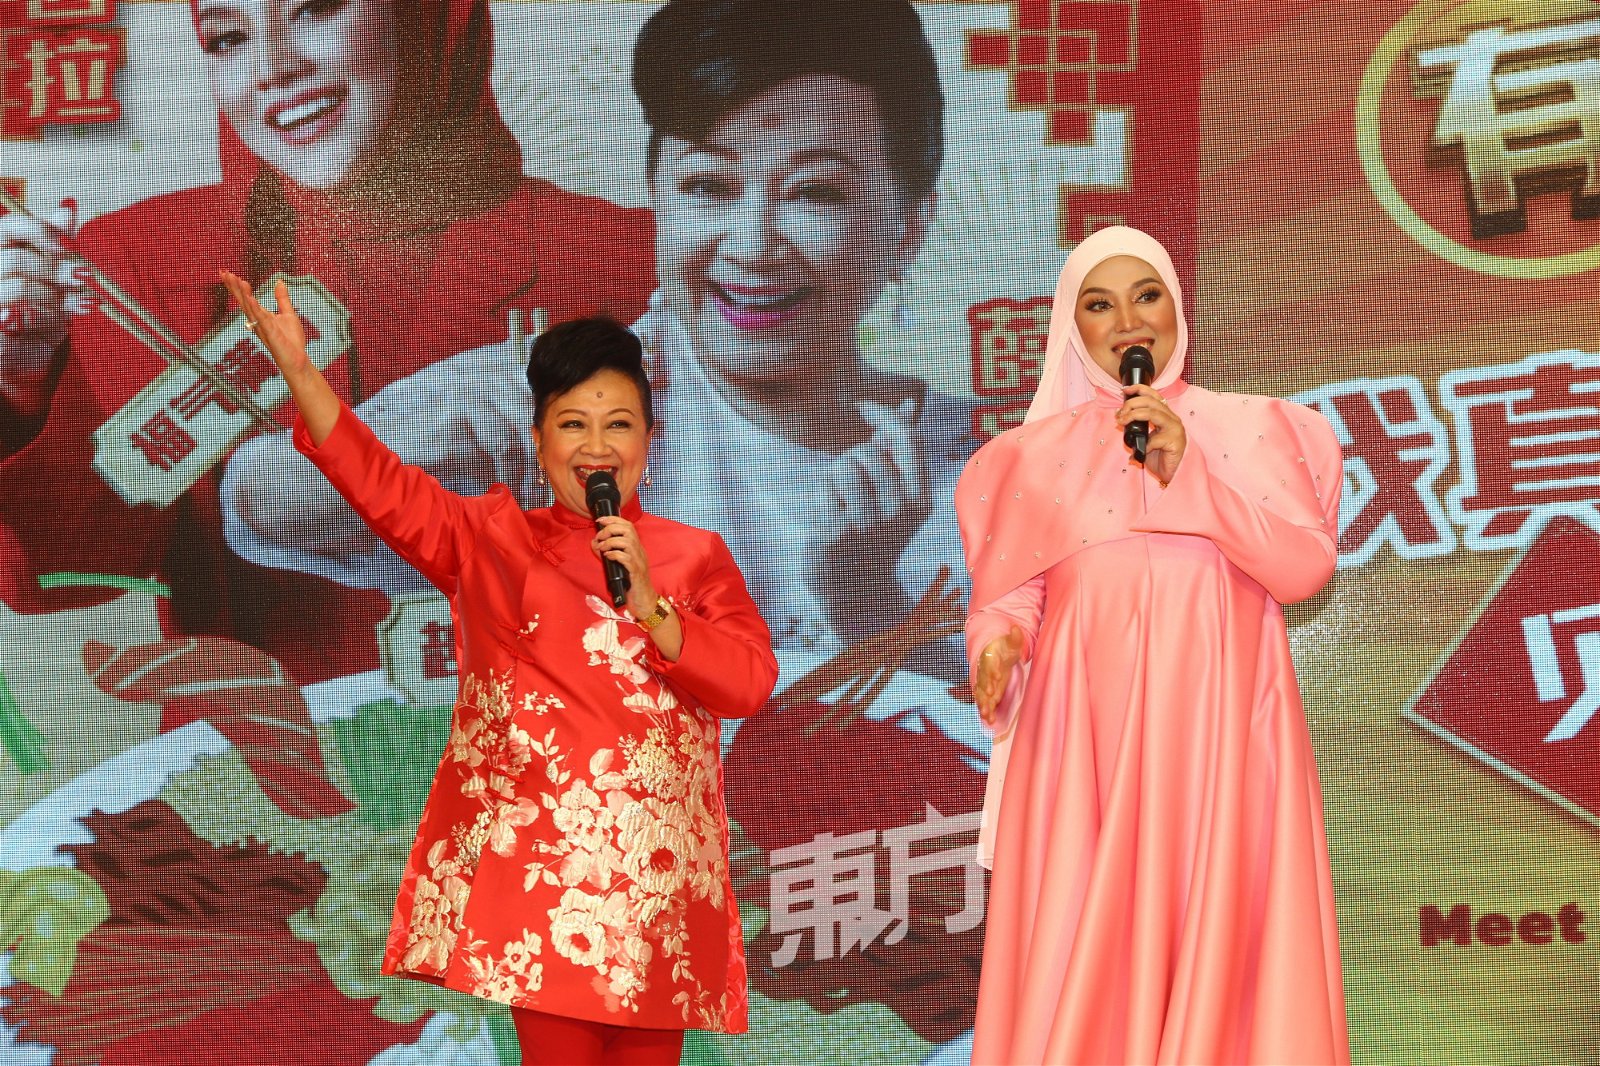 薛家燕和茜拉在商场演唱贺岁曲《有有有Year Of The YO!》掀起全场欢乐气氛。